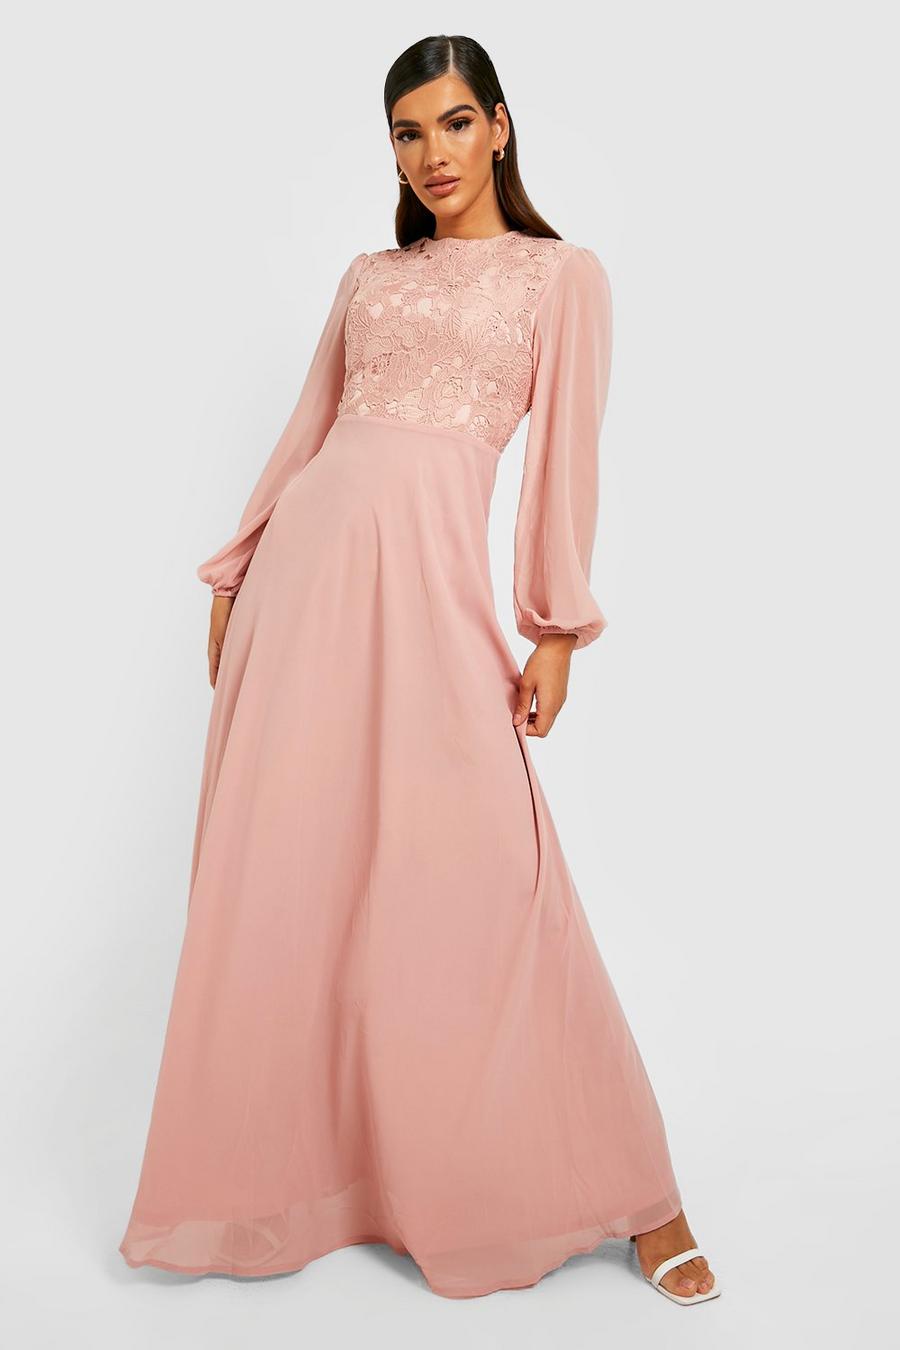 Blush pink Lace Long Sleeve Maxi Dress